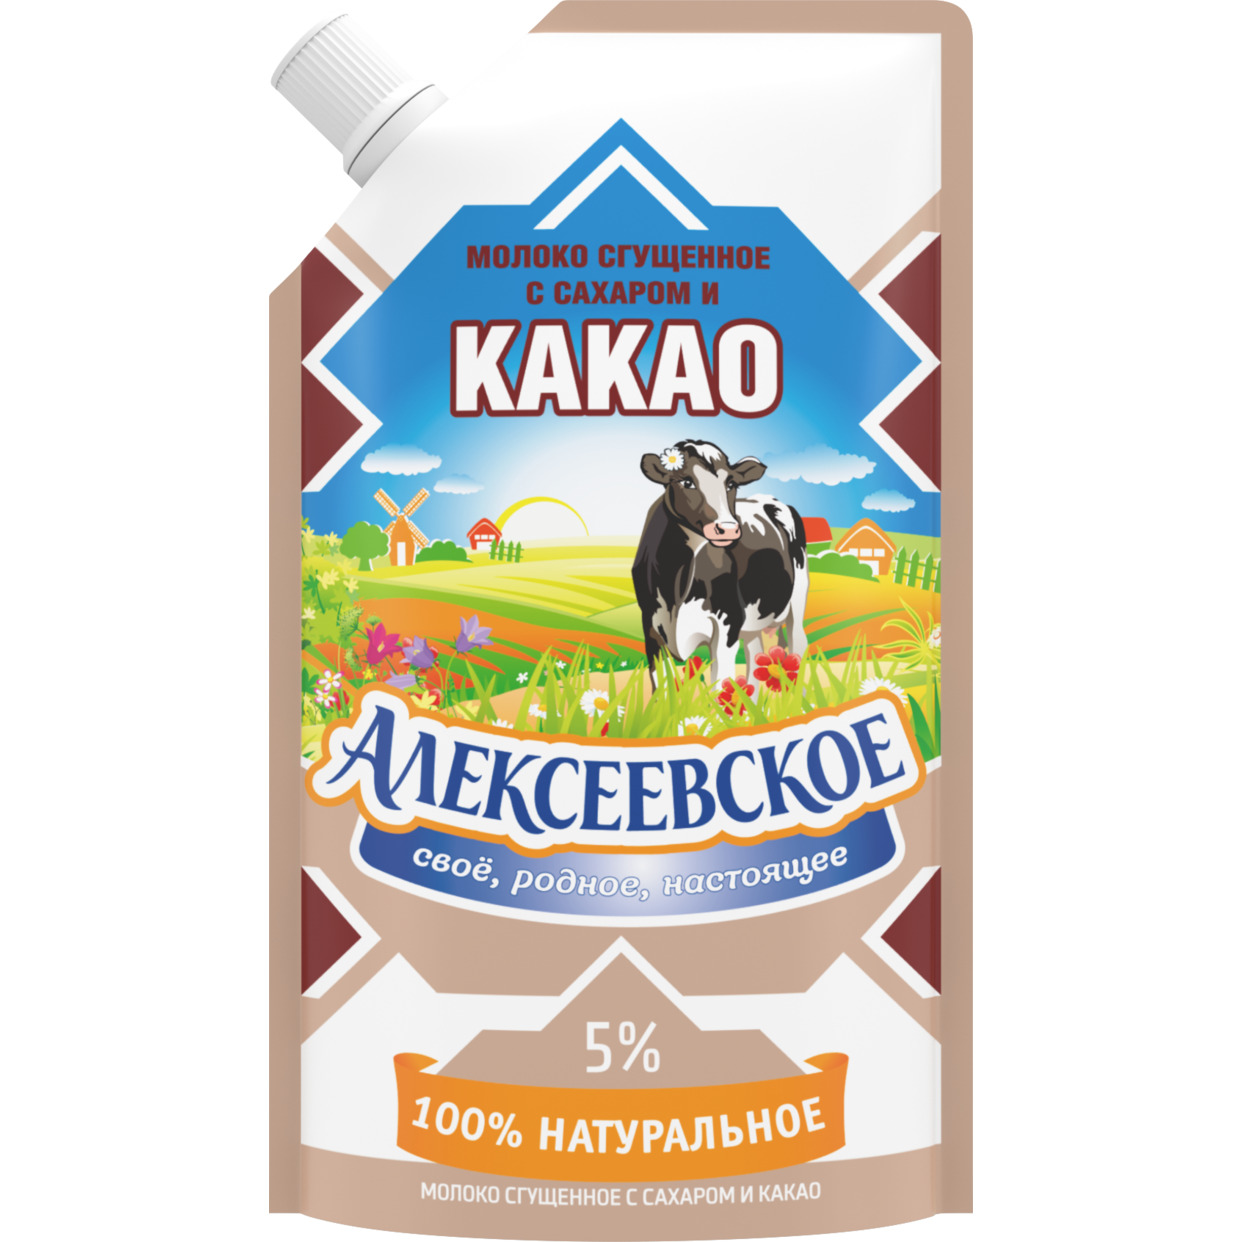 Молоко сгущенное, с какао, Алексеевское, 5%, 270 г по акции в Пятерочке